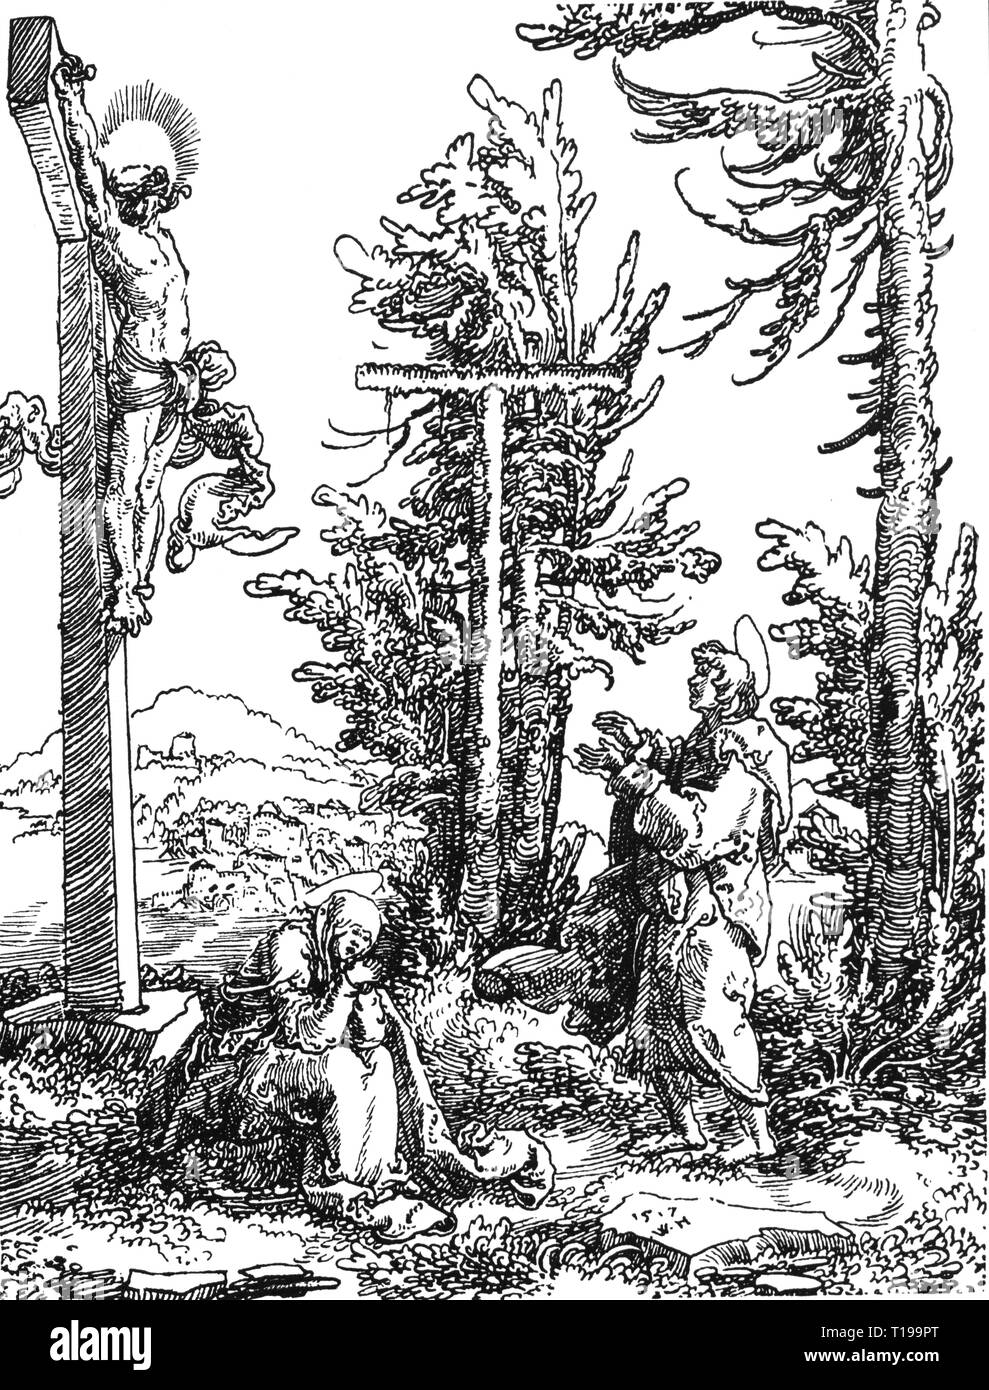 La religion, le christianisme, Jésus Christ, croix, 'Crucifixion', Stylo dessin, par Wolf Huber (vers 1485 - 1553), 16e siècle, galerie d'estampes, Berlin, l'artiste n'a pas d'auteur pour être effacé Banque D'Images